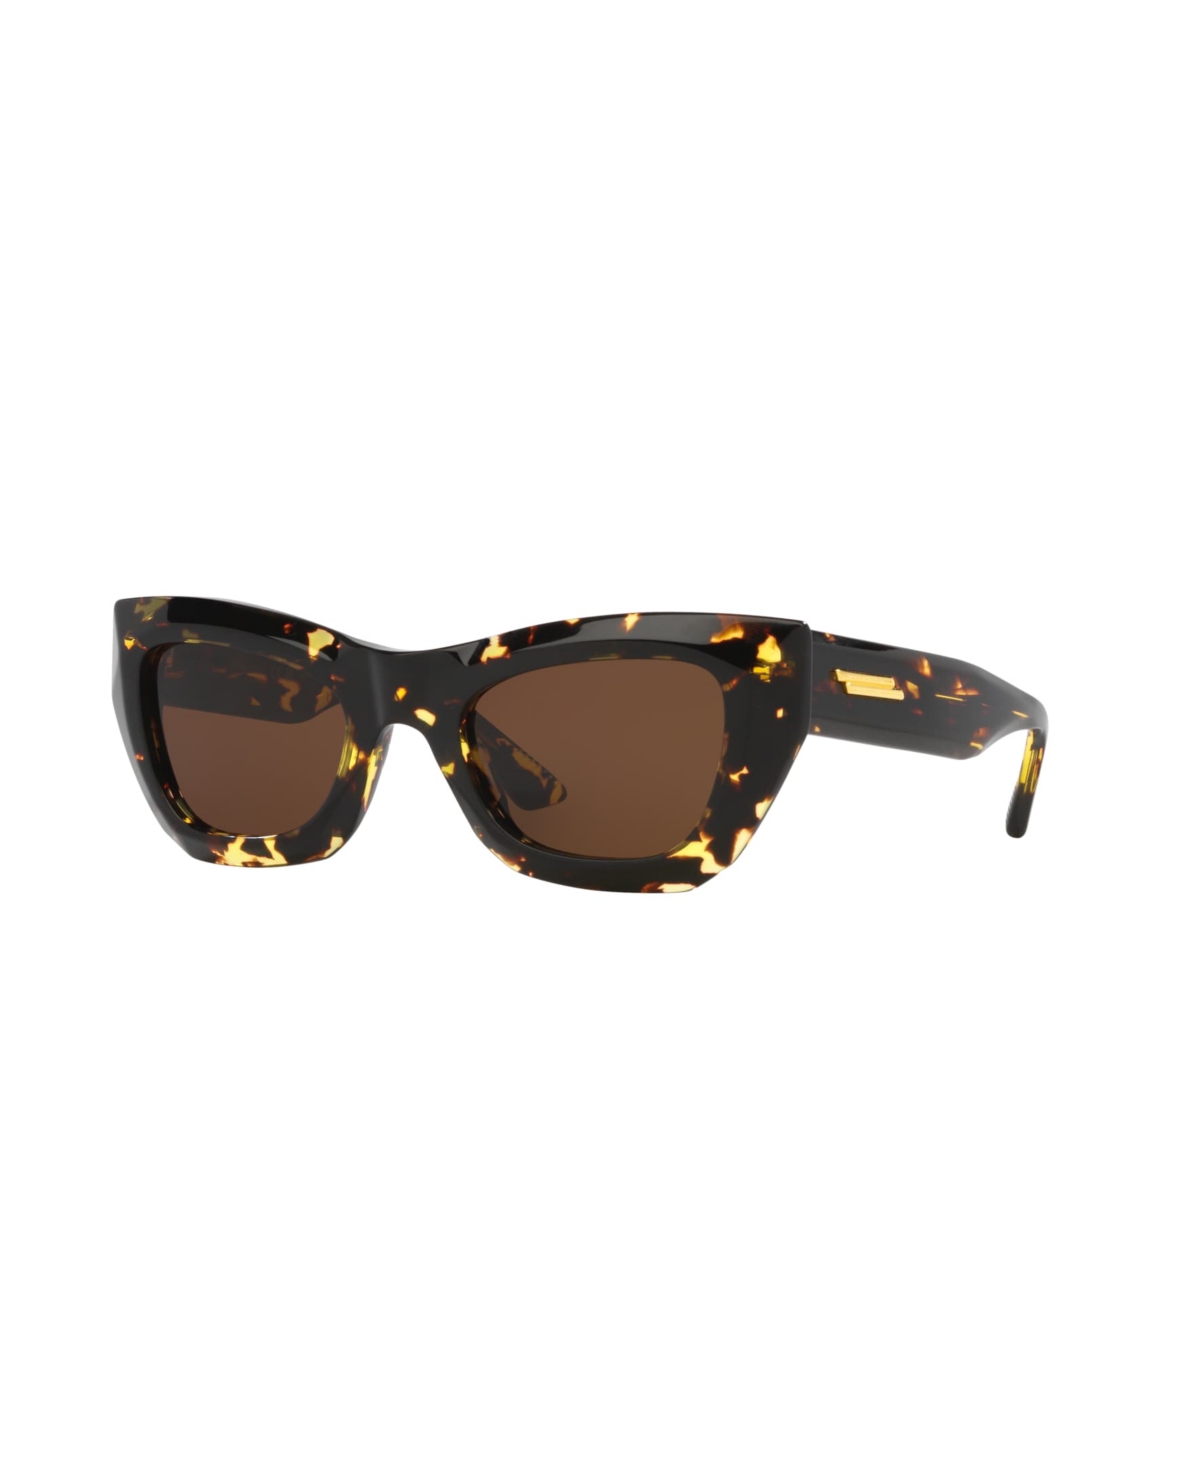 Women's Sunglasses, Bv1251S 6J000414 - Gray